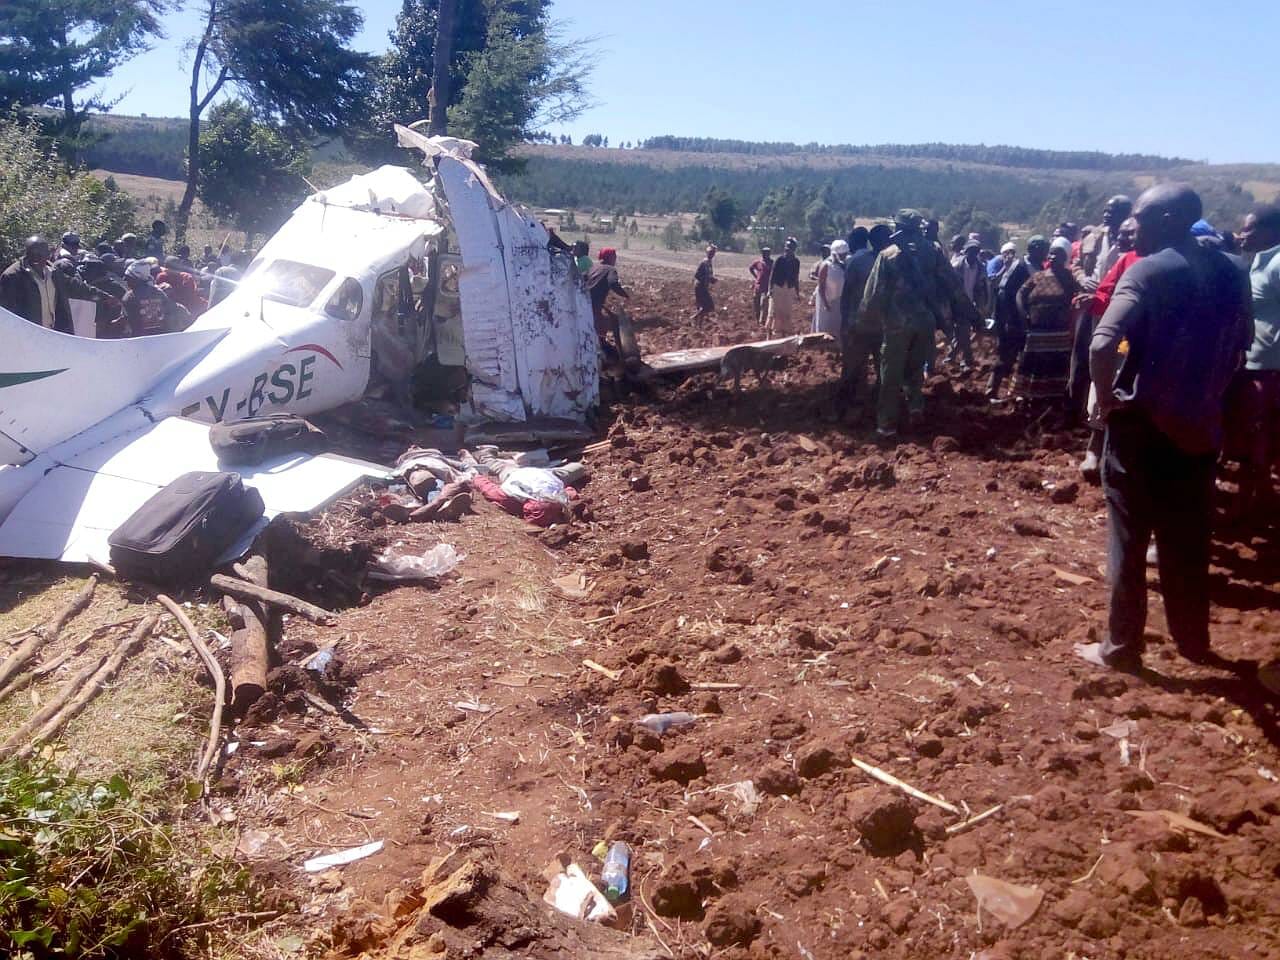 Kenia, Februar 2019: Beim Absturz eines kleinen Transportflugzeugs sterben nahe dem Flughafen Nairobi fünf Menschen.